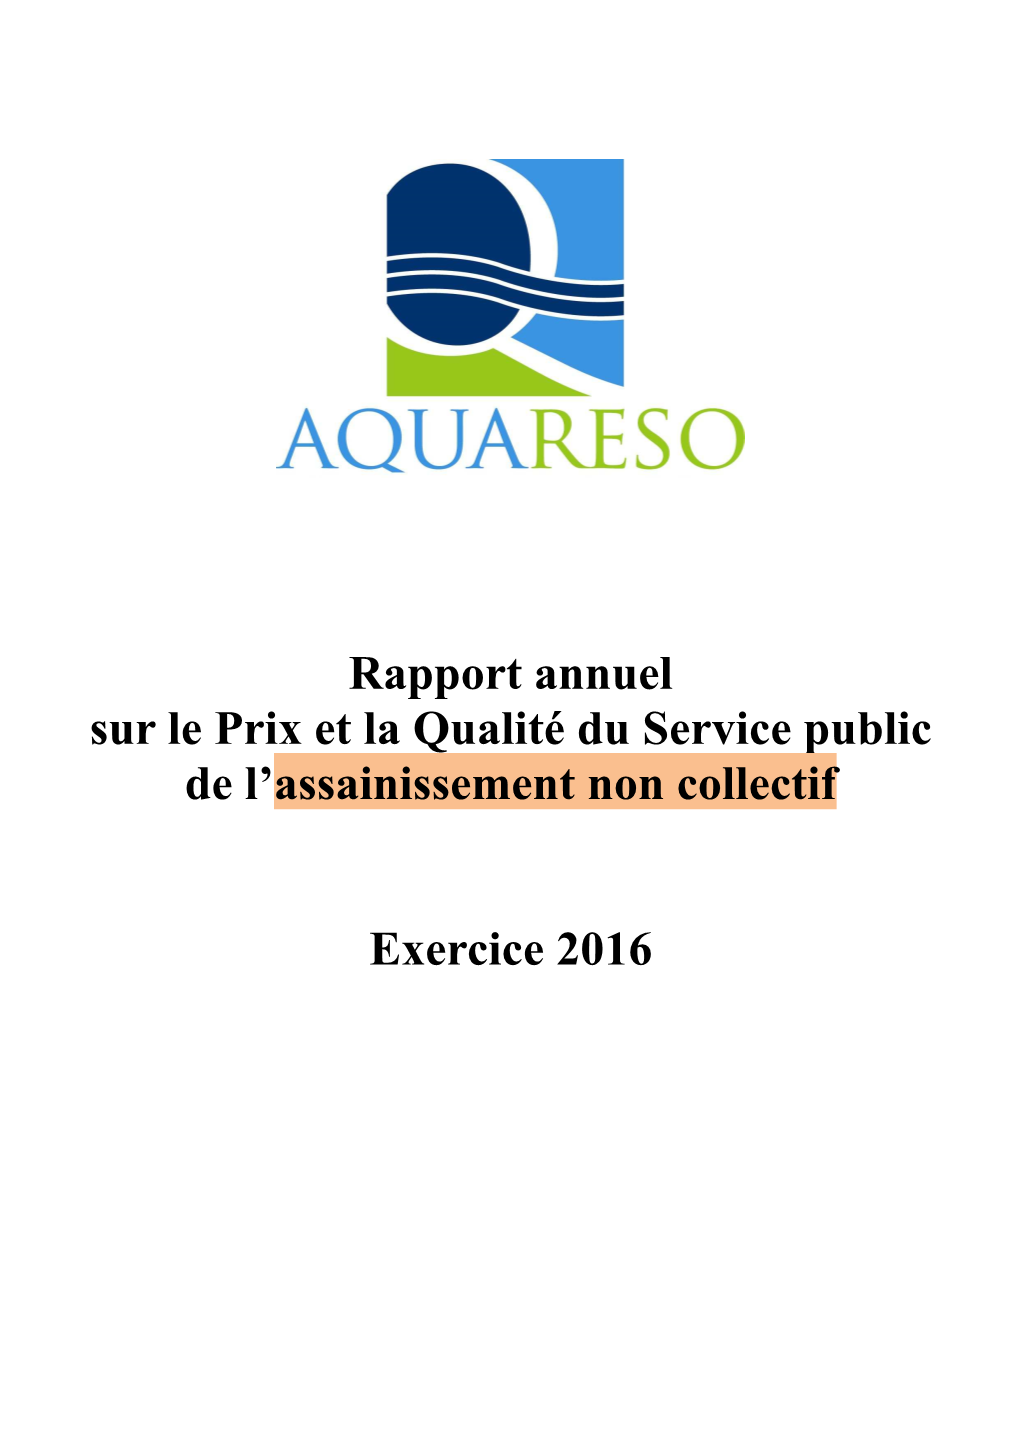 Rapport Annuel Sur Le Prix Et La Qualité Du Service Public De L’Assainissement Non Collectif